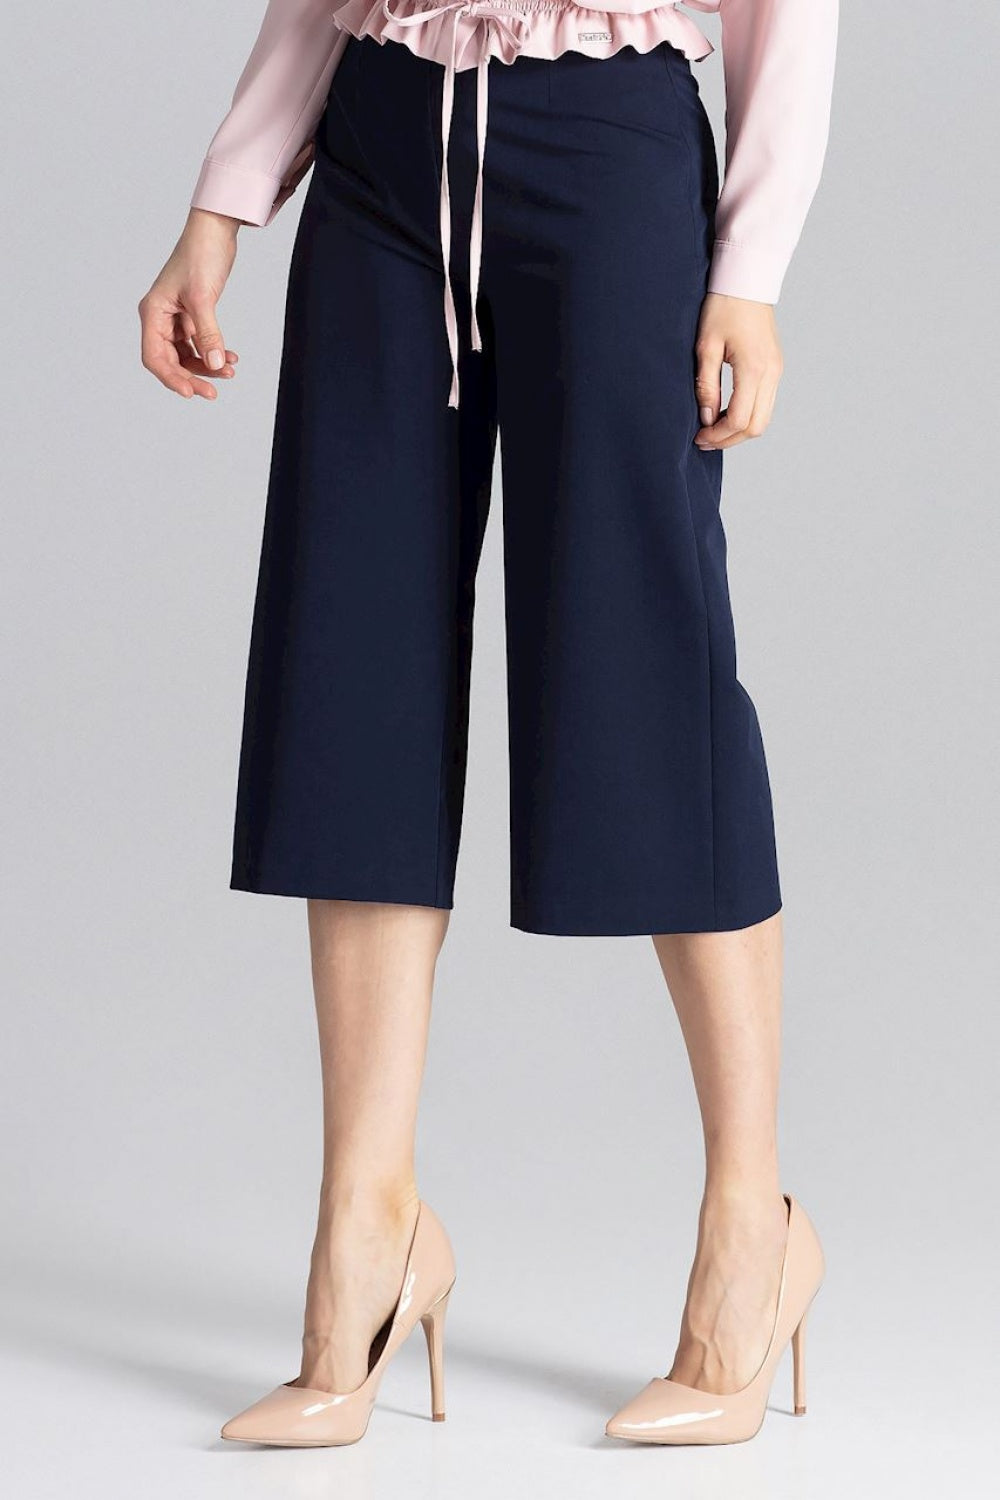 Women trousers model 129788 Figl